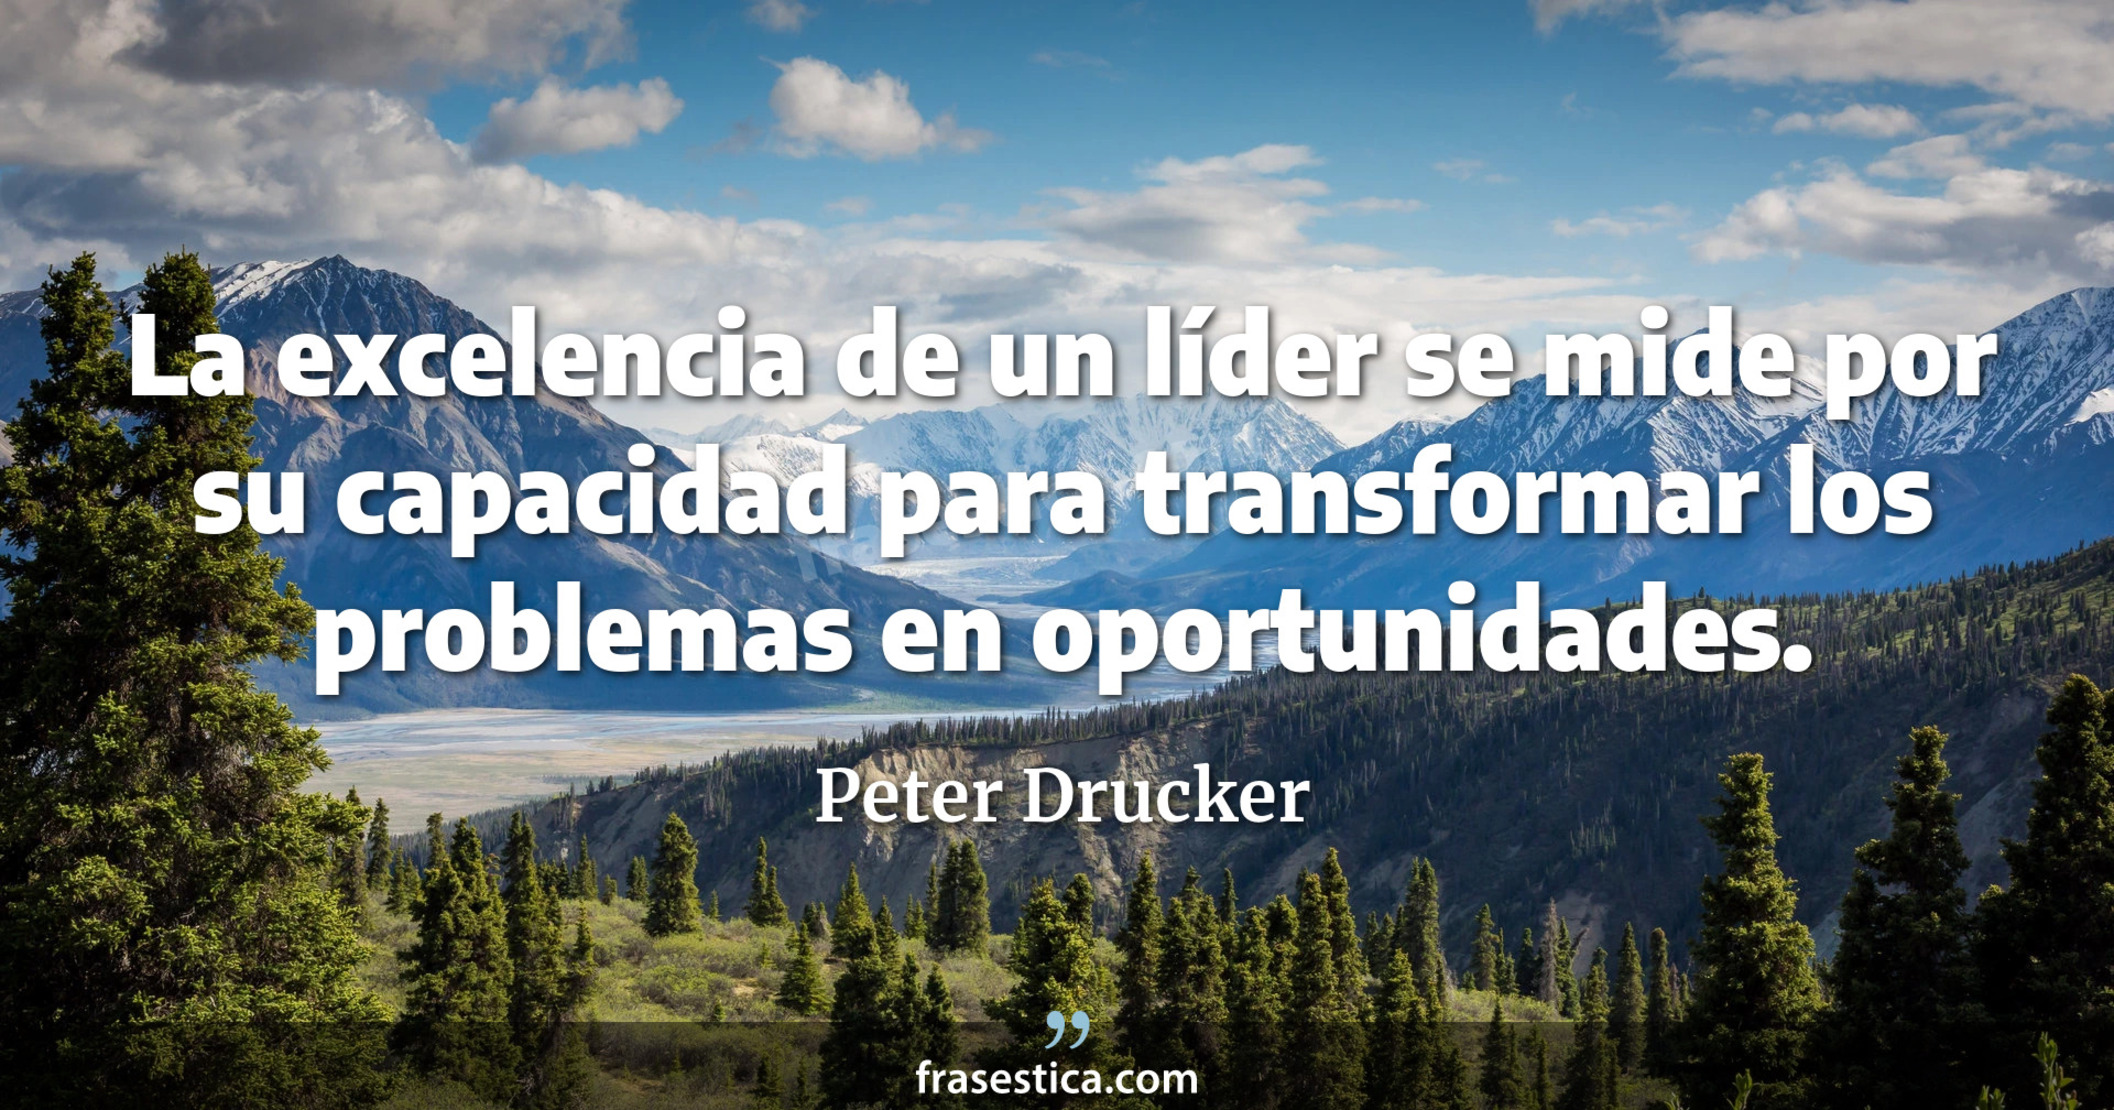 La excelencia de un líder se mide por su capacidad para transformar los problemas en oportunidades. - Peter Drucker